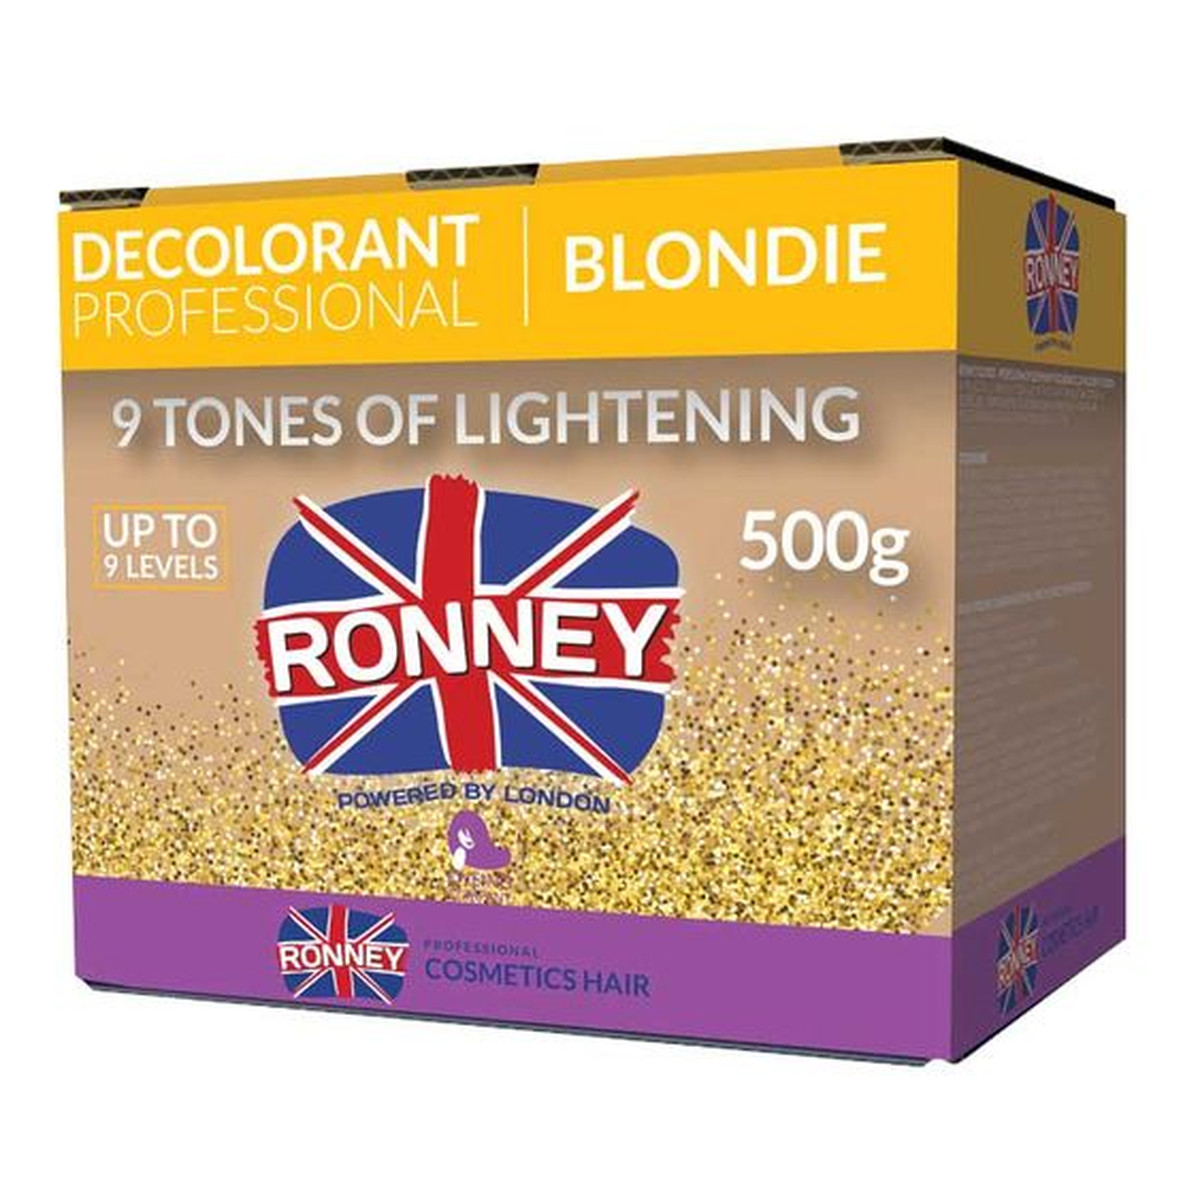 Ronney Professional decolorant blondie profesjonalny bezpyłowy rozjaśniacz do włosów 500g